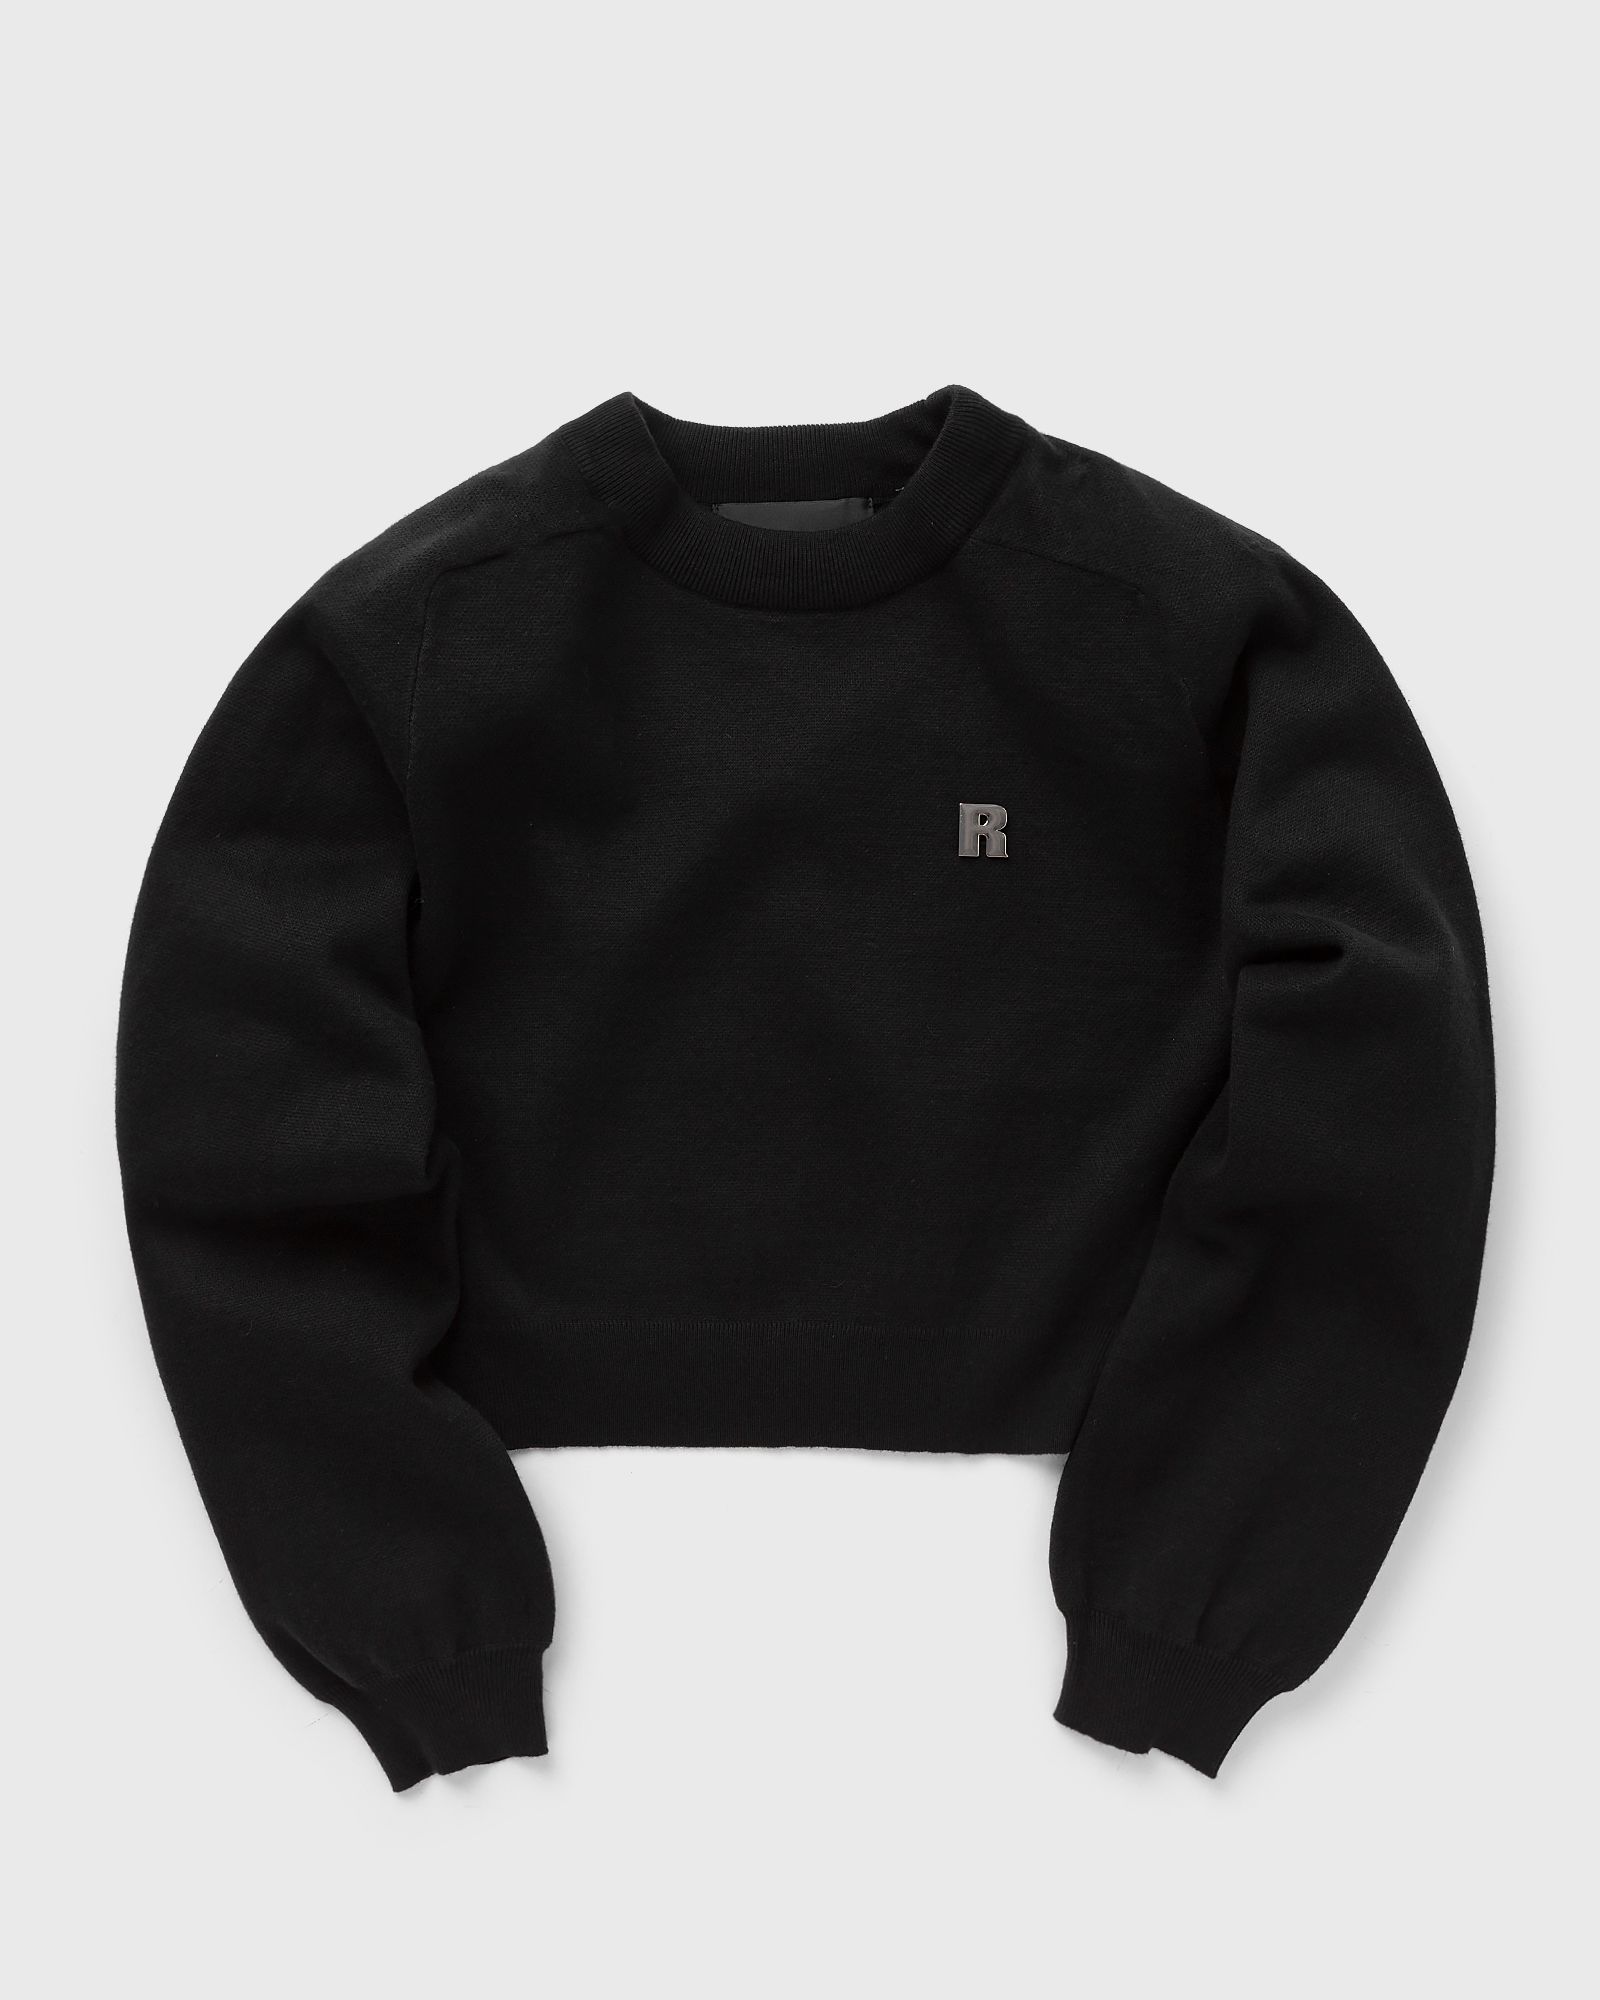 ROTATE Birger Christensen - firm knit jumper women sweatshirts black in größe:l